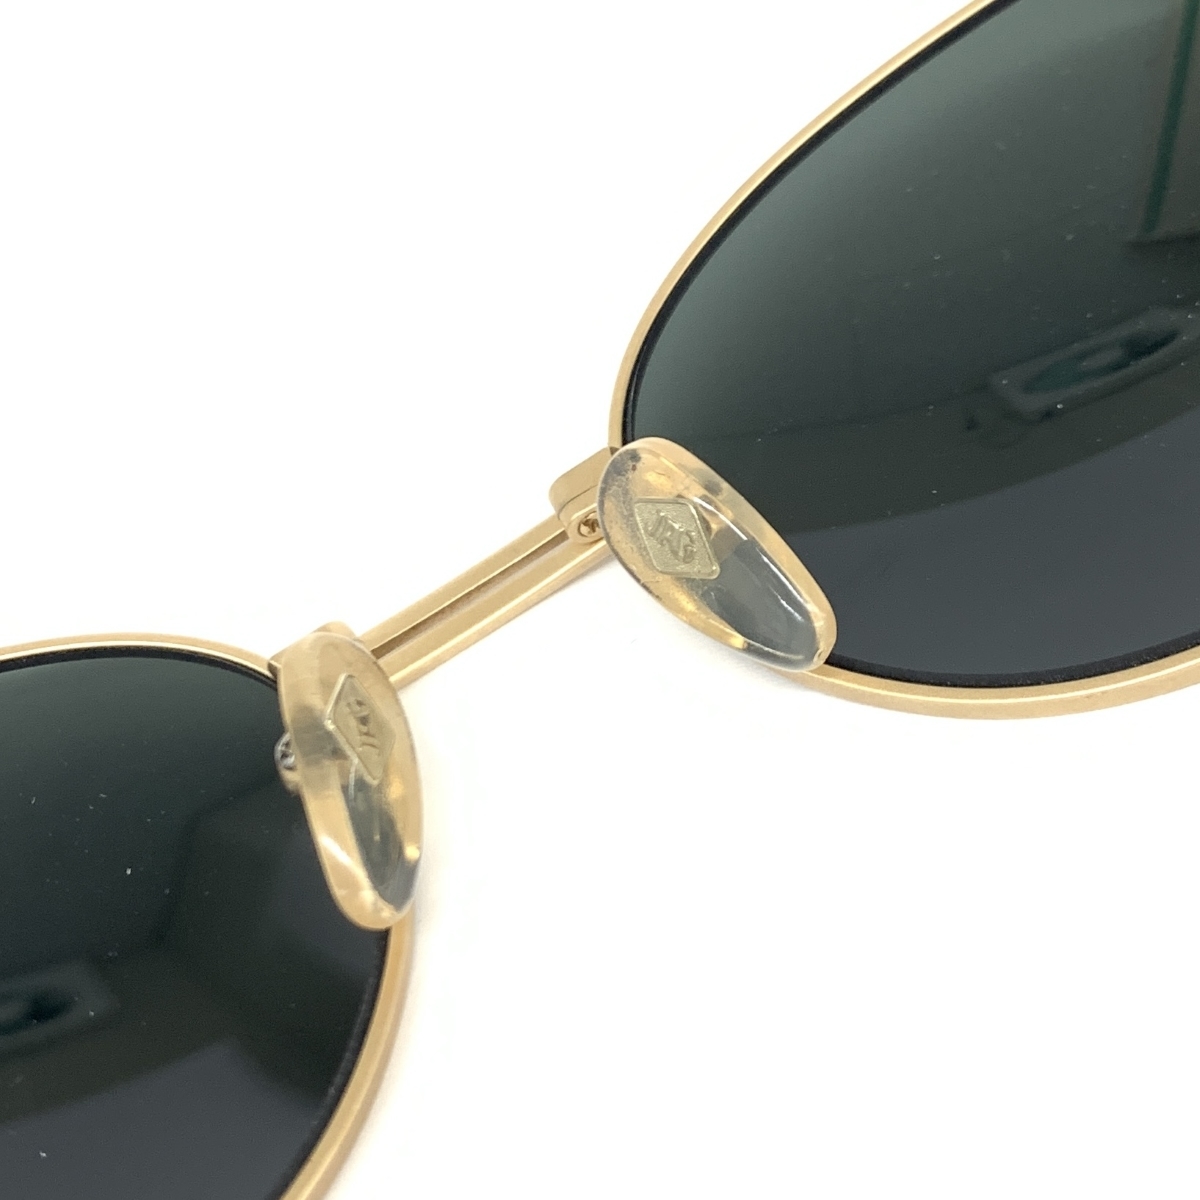  прекрасный товар *JEAN PAUL GAULTIER Jean-Paul Gaultier солнцезащитные очки *58-6102 Gold цвет унисекс Vintage неиспользуемый товар мелкие вещи 